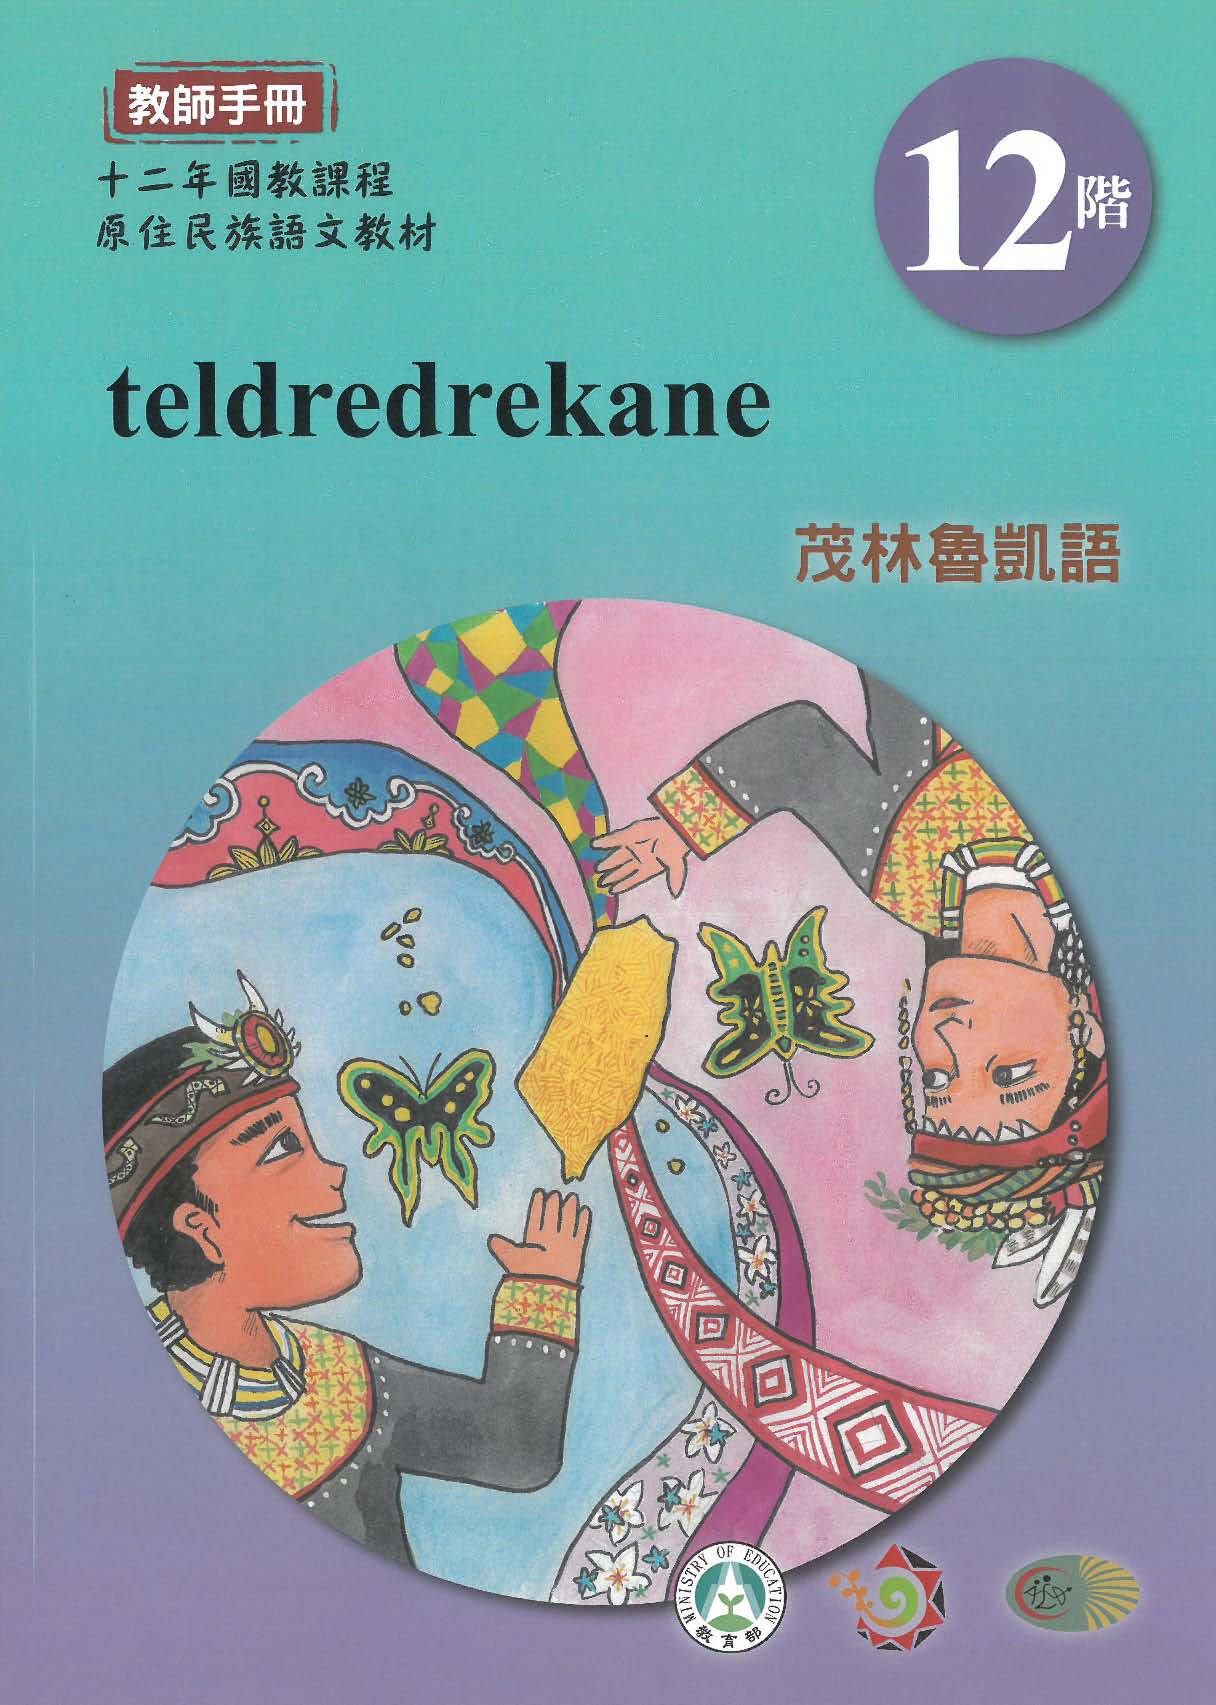 十二年國教原住民族語文教材 茂林魯凱語 教師手冊 第12階